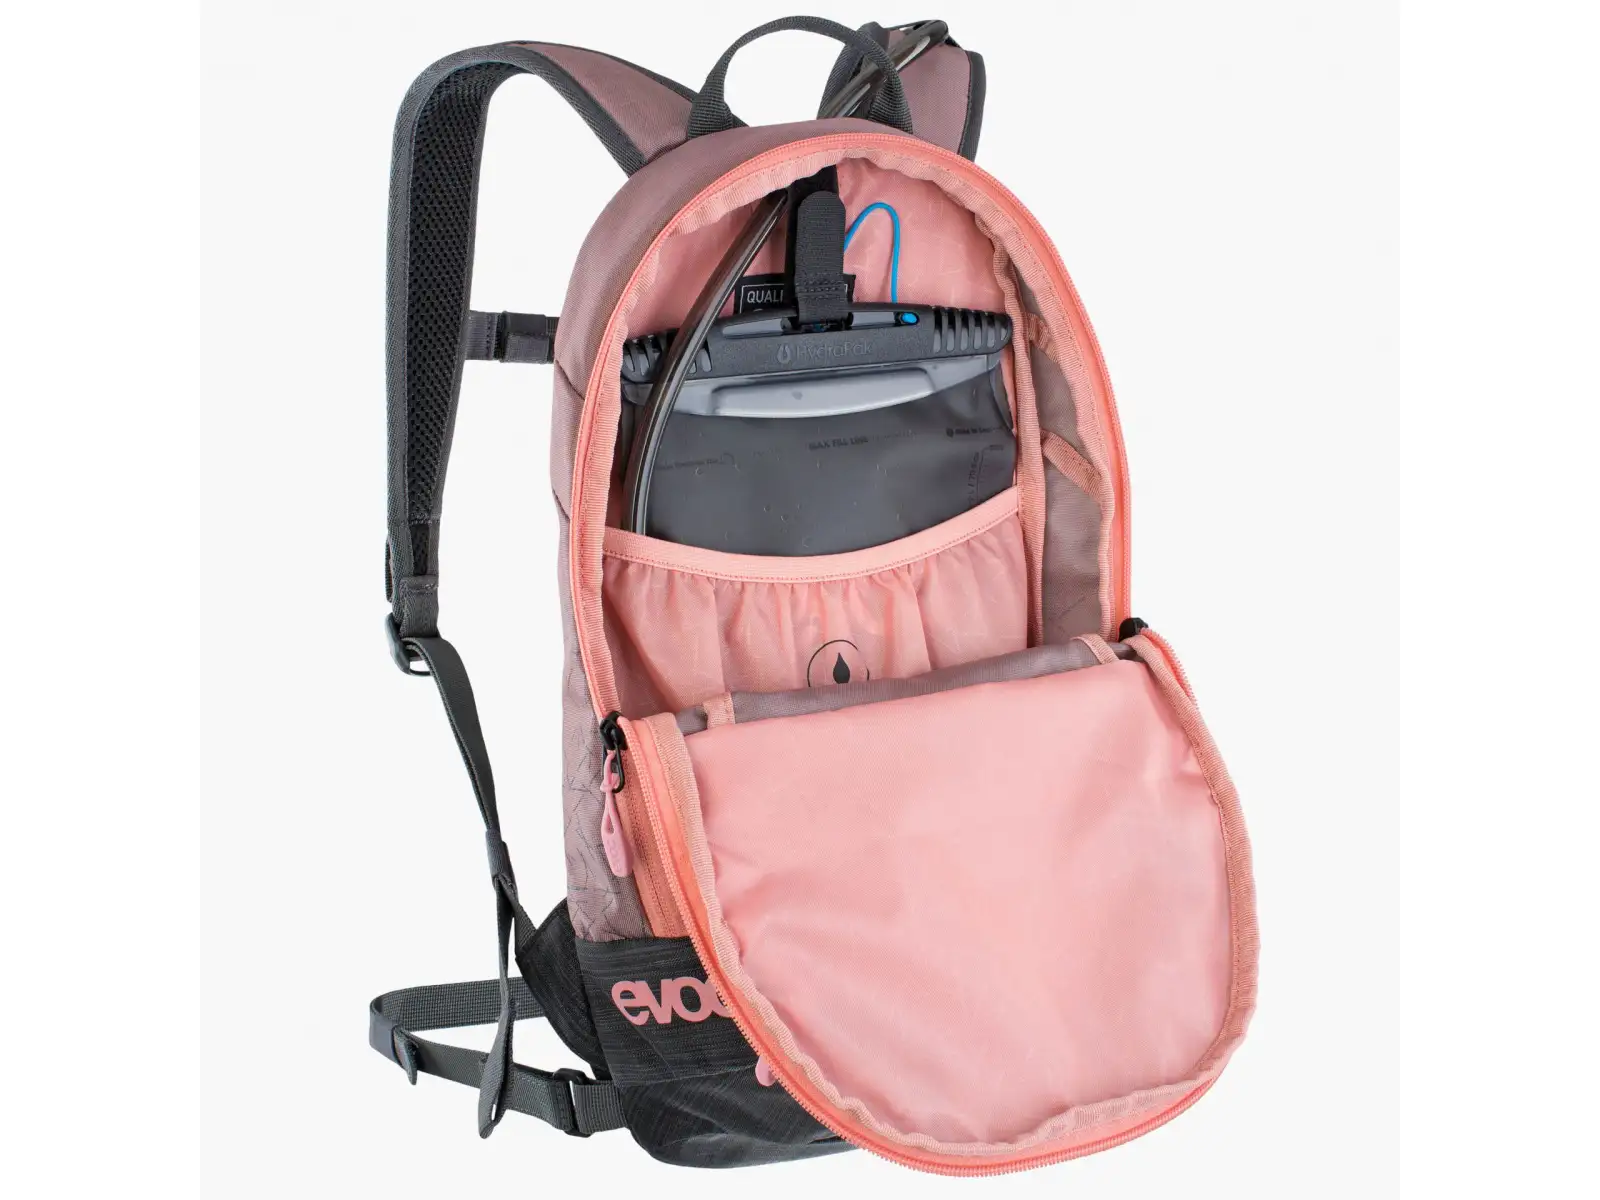 Evoc Joyride 4 detský batoh 4 l dusty pink/carbon grey